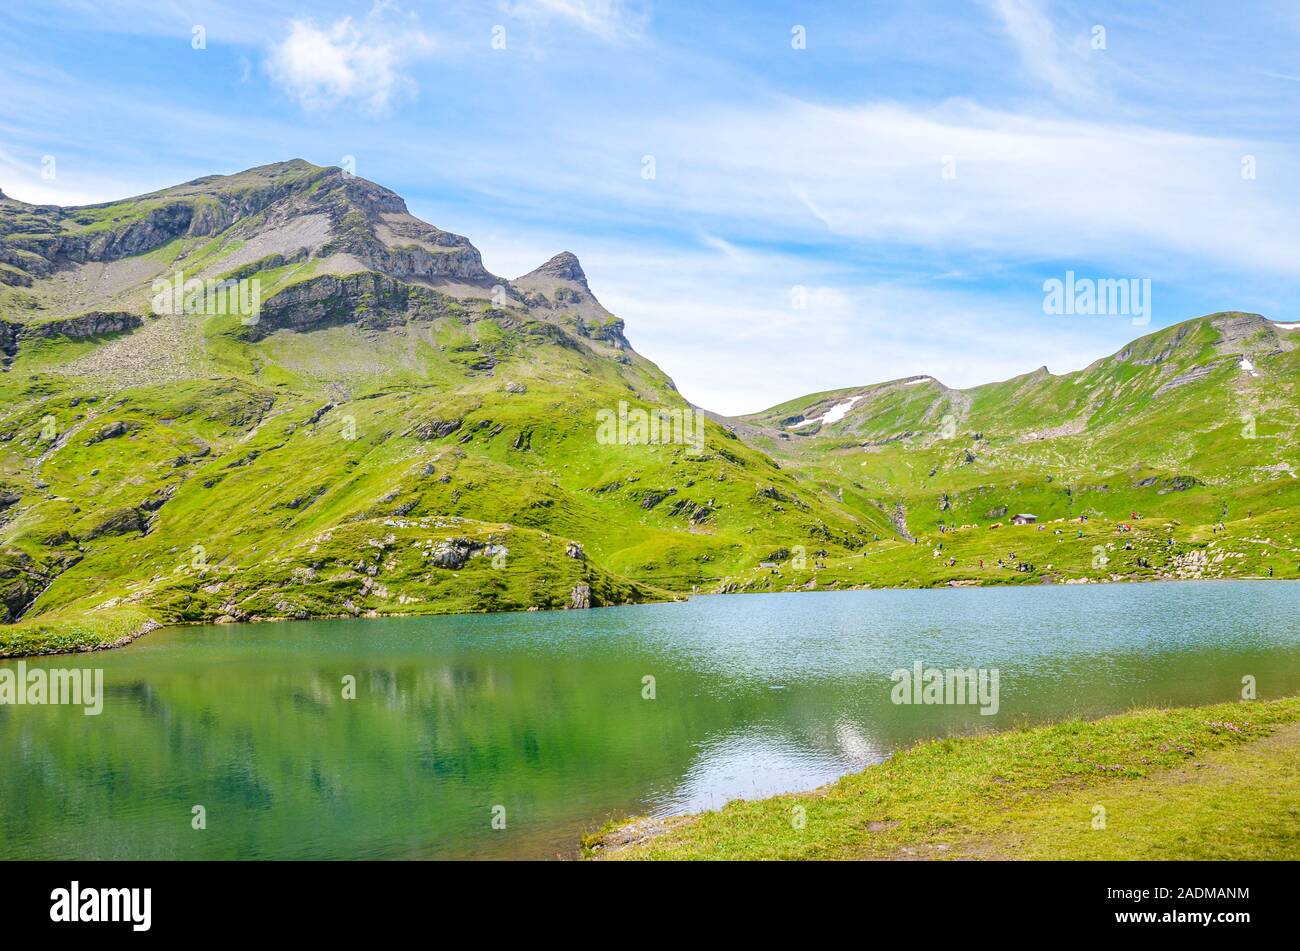 Schöne Bachalpsee See in den Schweizer Alpen im Sommer. Alpine See und Landschaft. Beliebte wandern Ziel auf dem Weg von Grindelwald. Touristische Attraktion in der Schweiz. Stockfoto